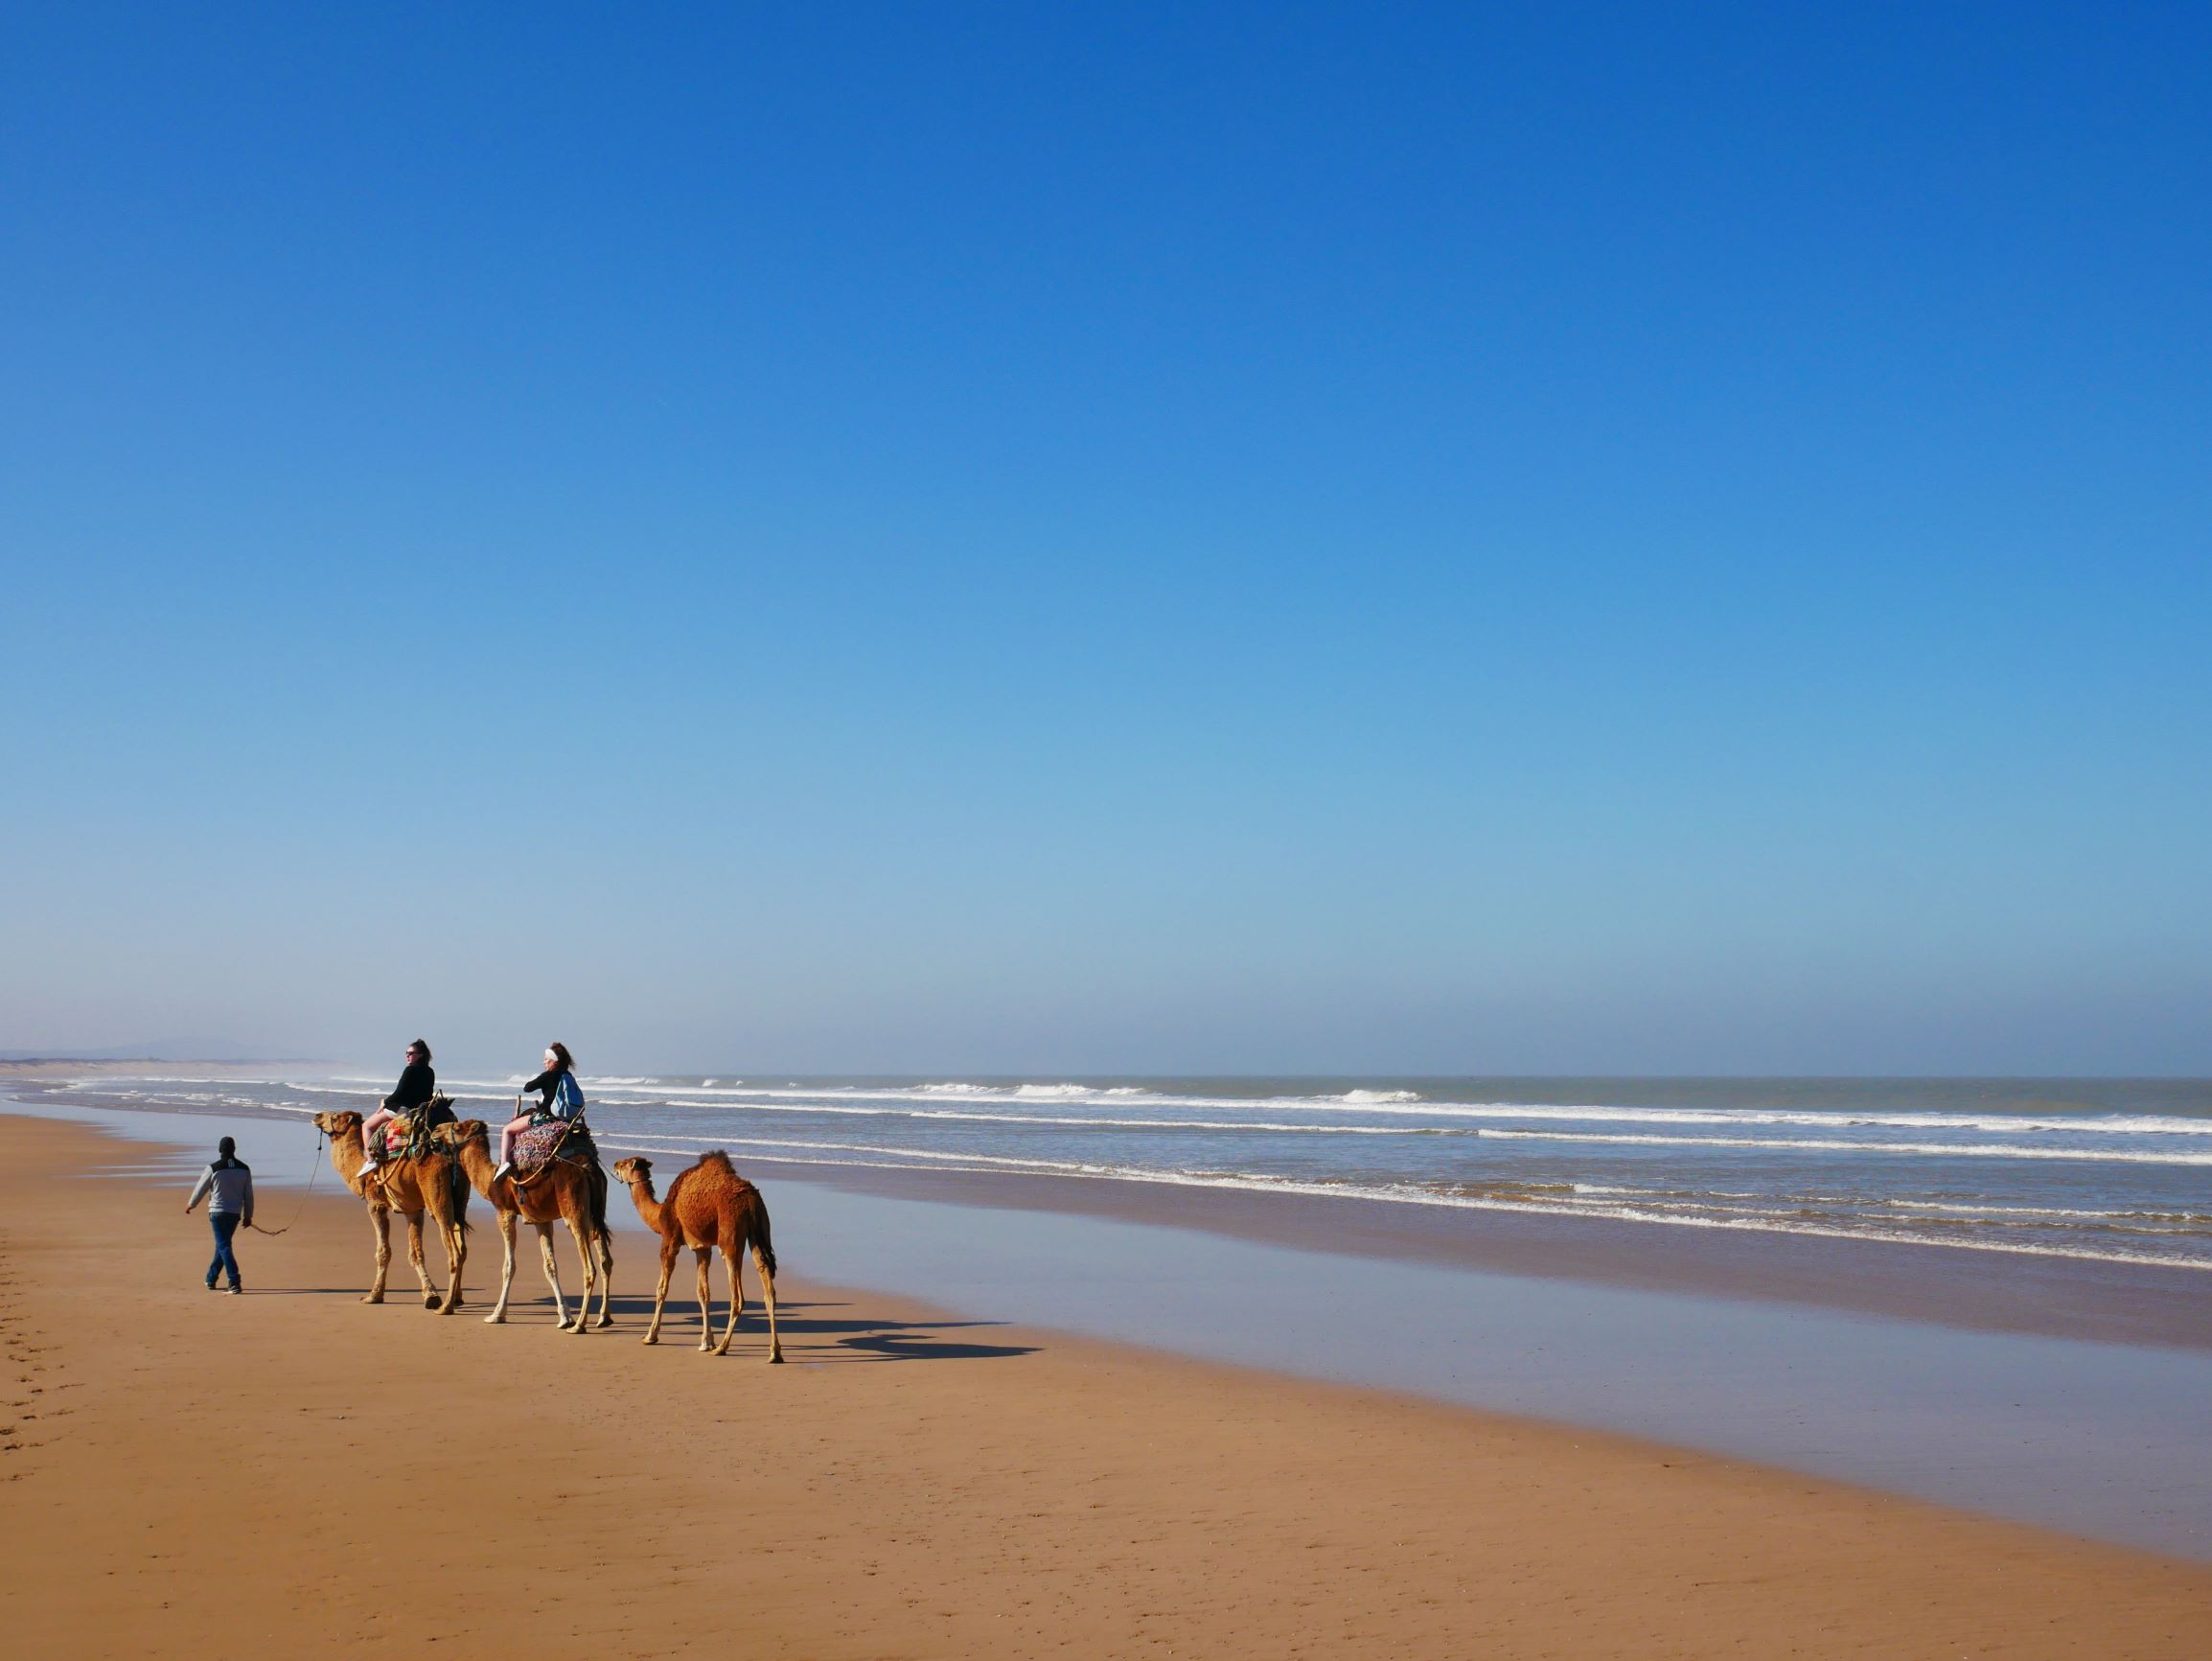 駱駝與人沙灘漫步